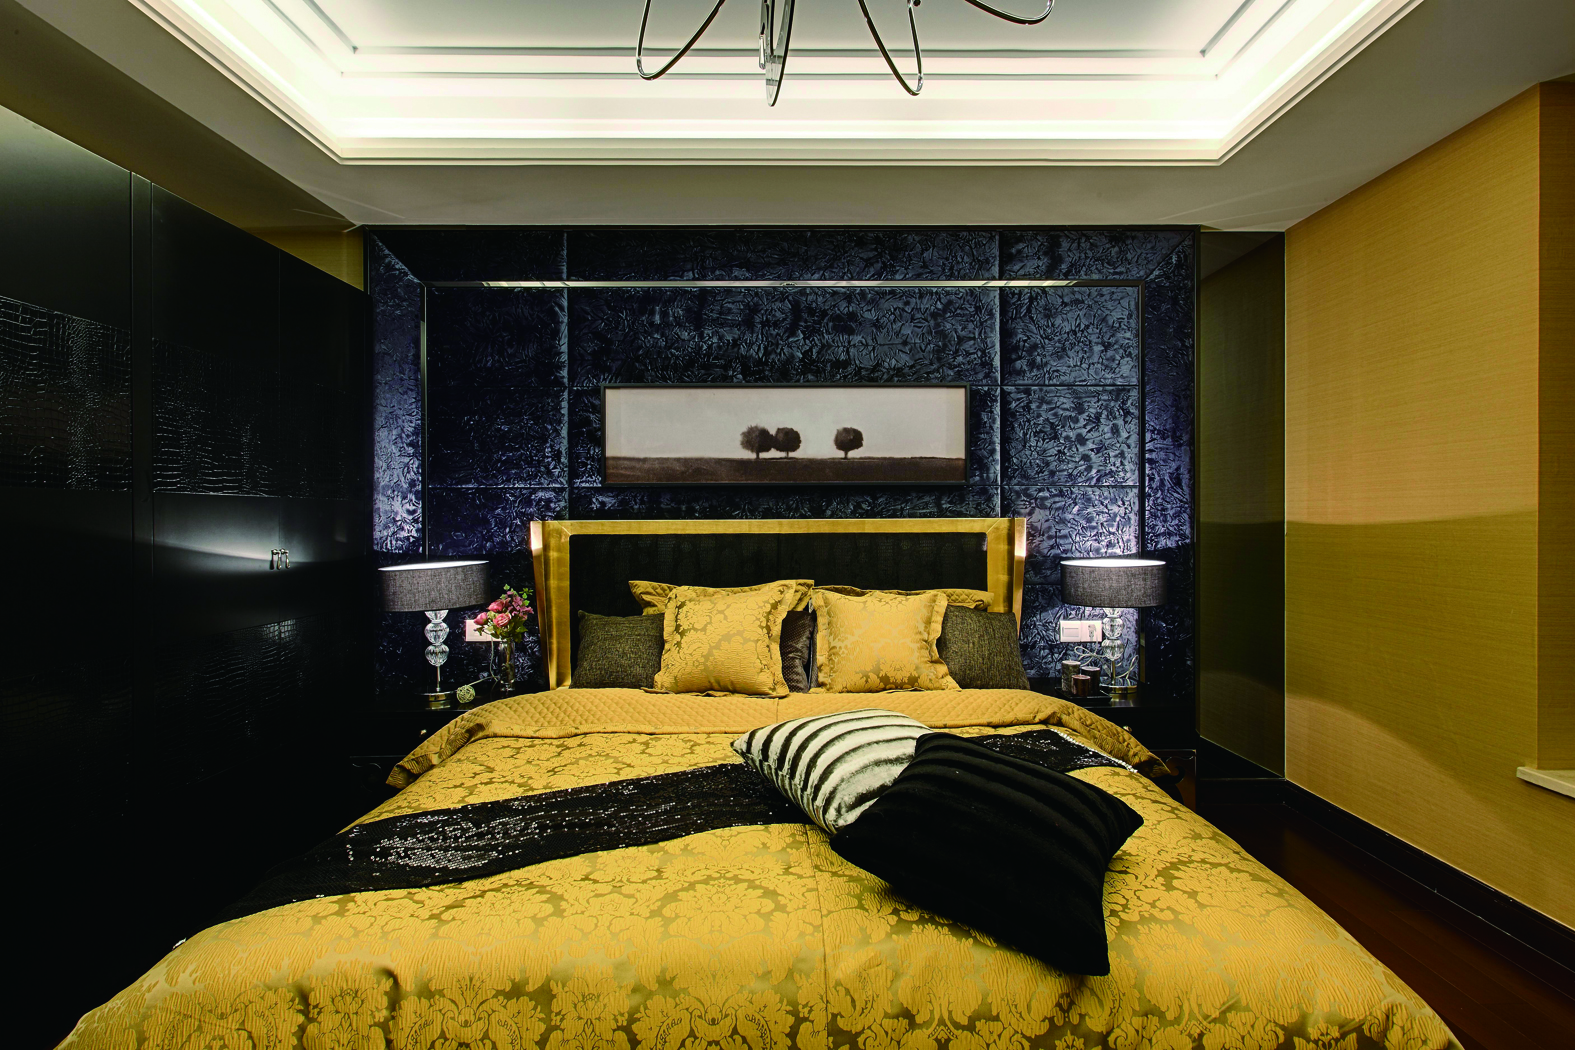  深色系的墙面配以明黄的床品，虽不太符合大众的品味，但深得业主欢心。